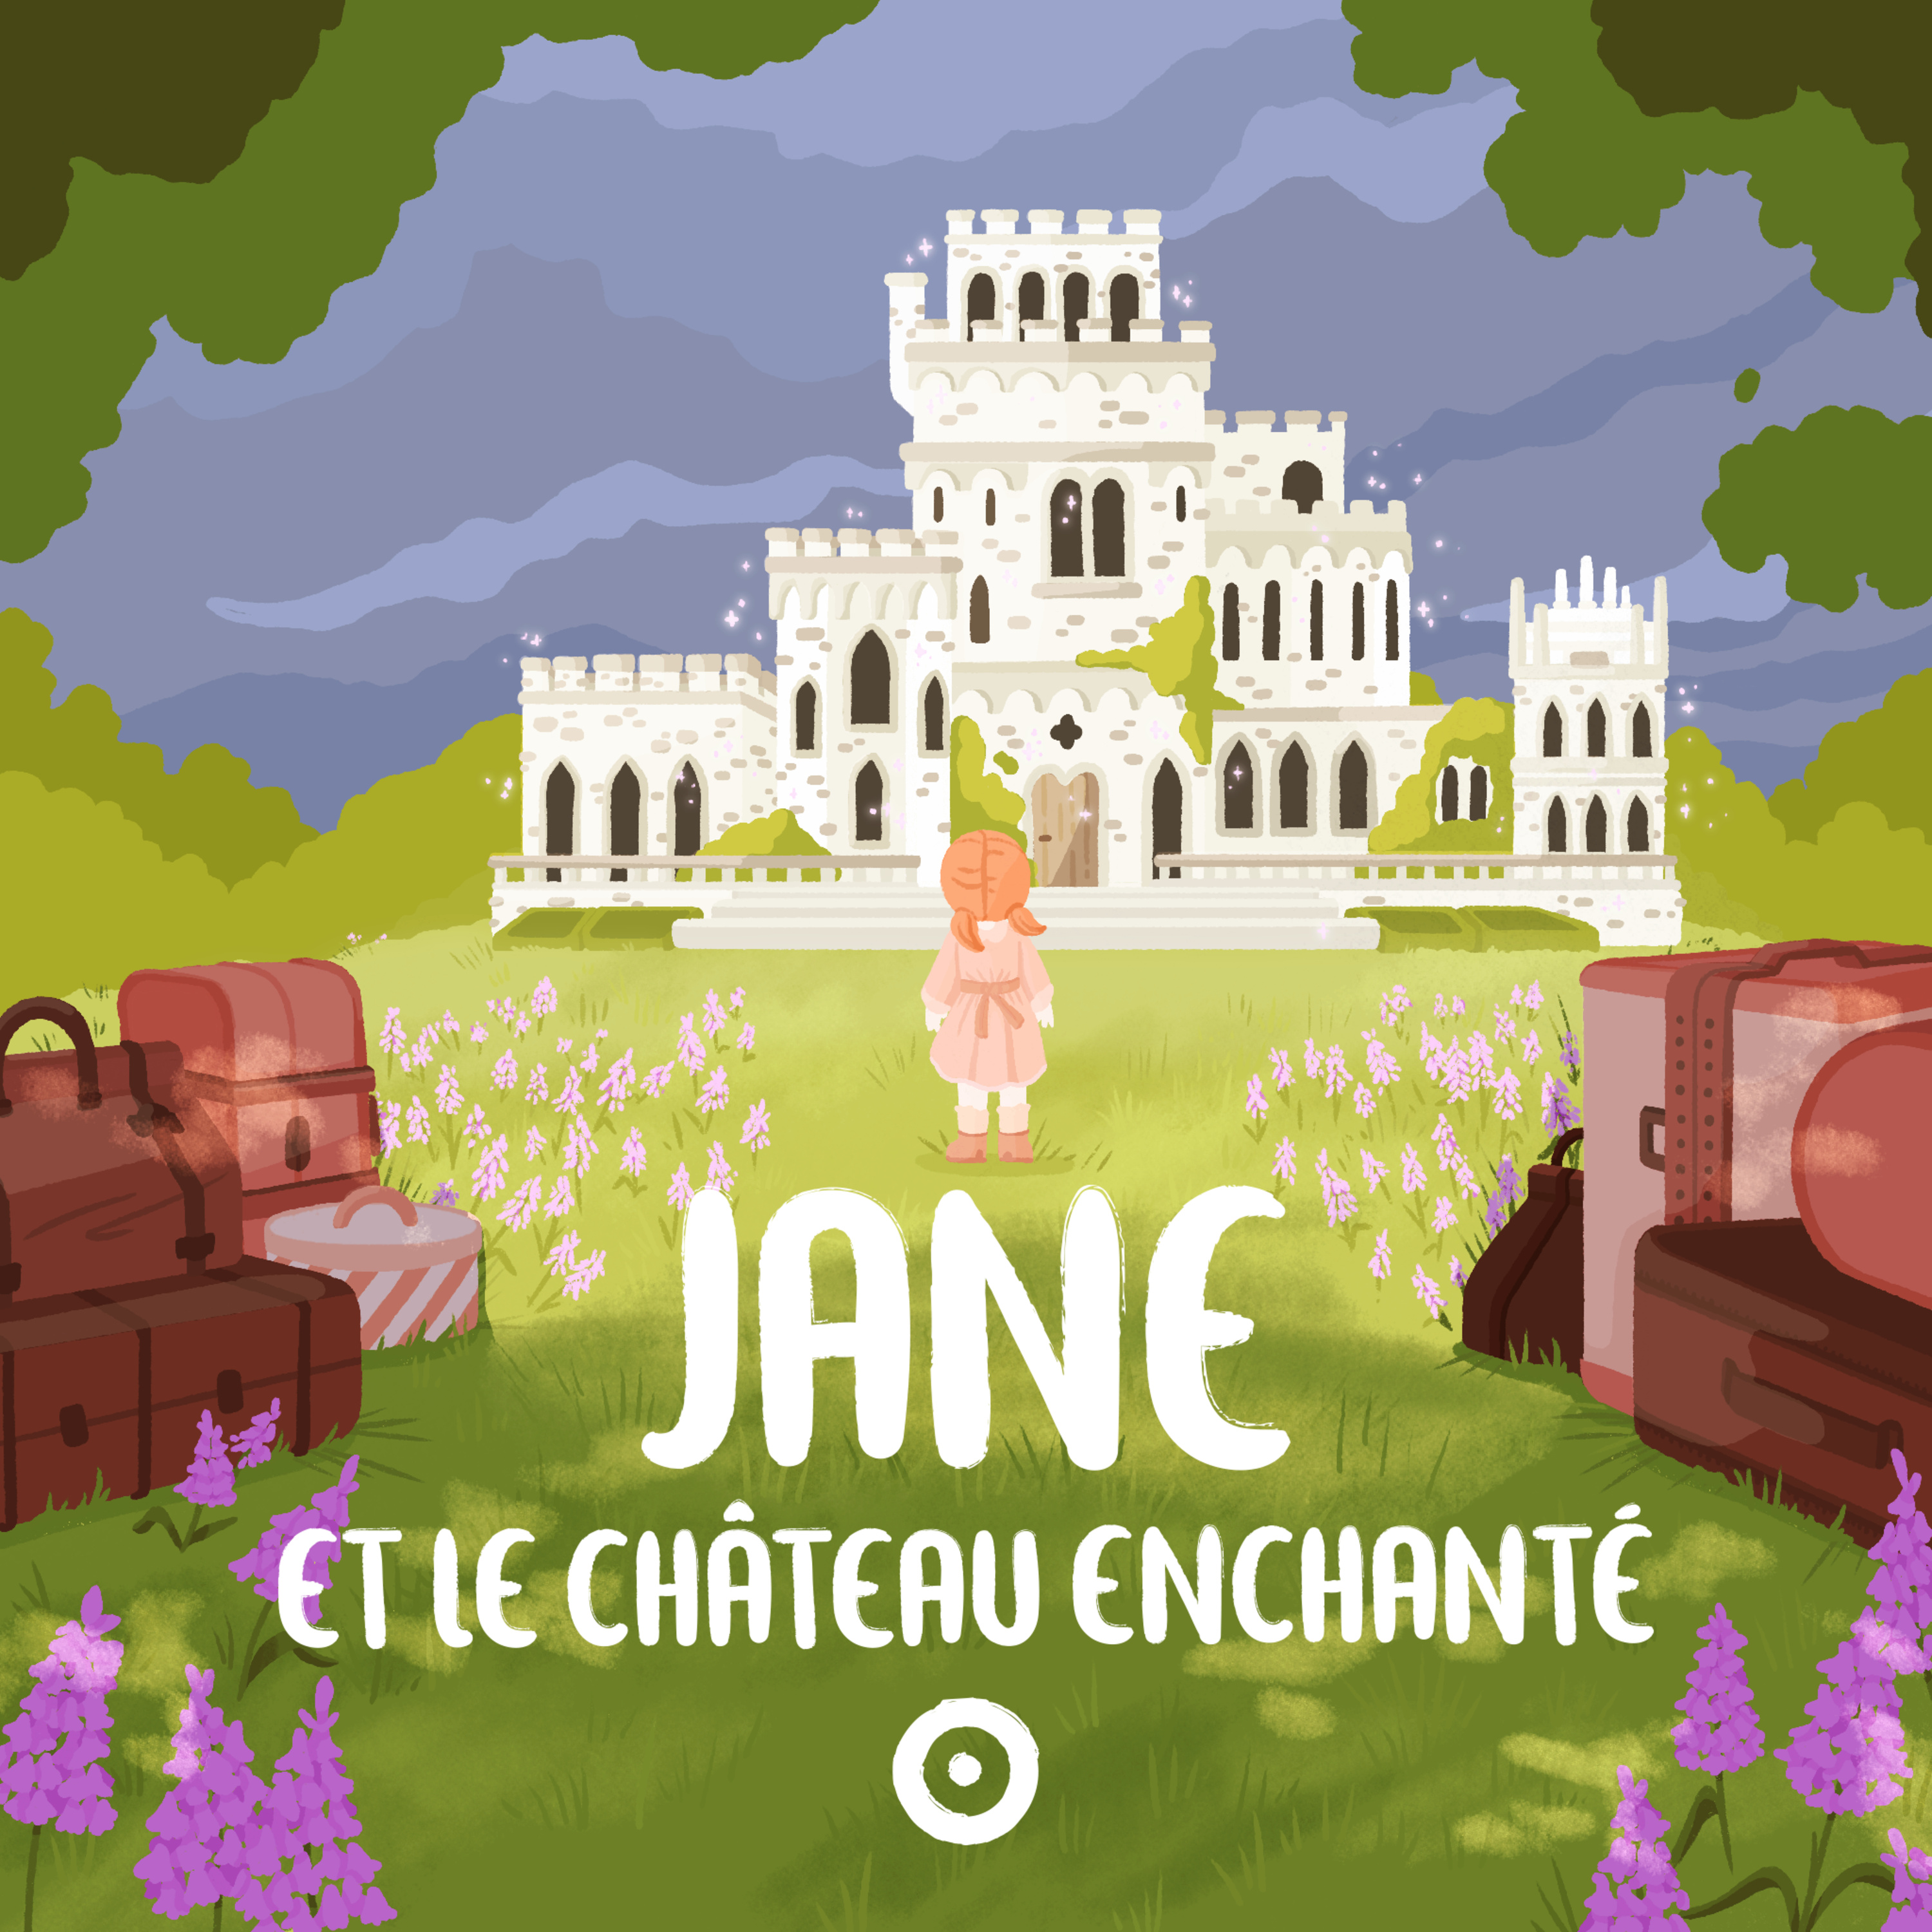 Episode 3 - Jane et le château enchanté - L’oiseau et la fleur